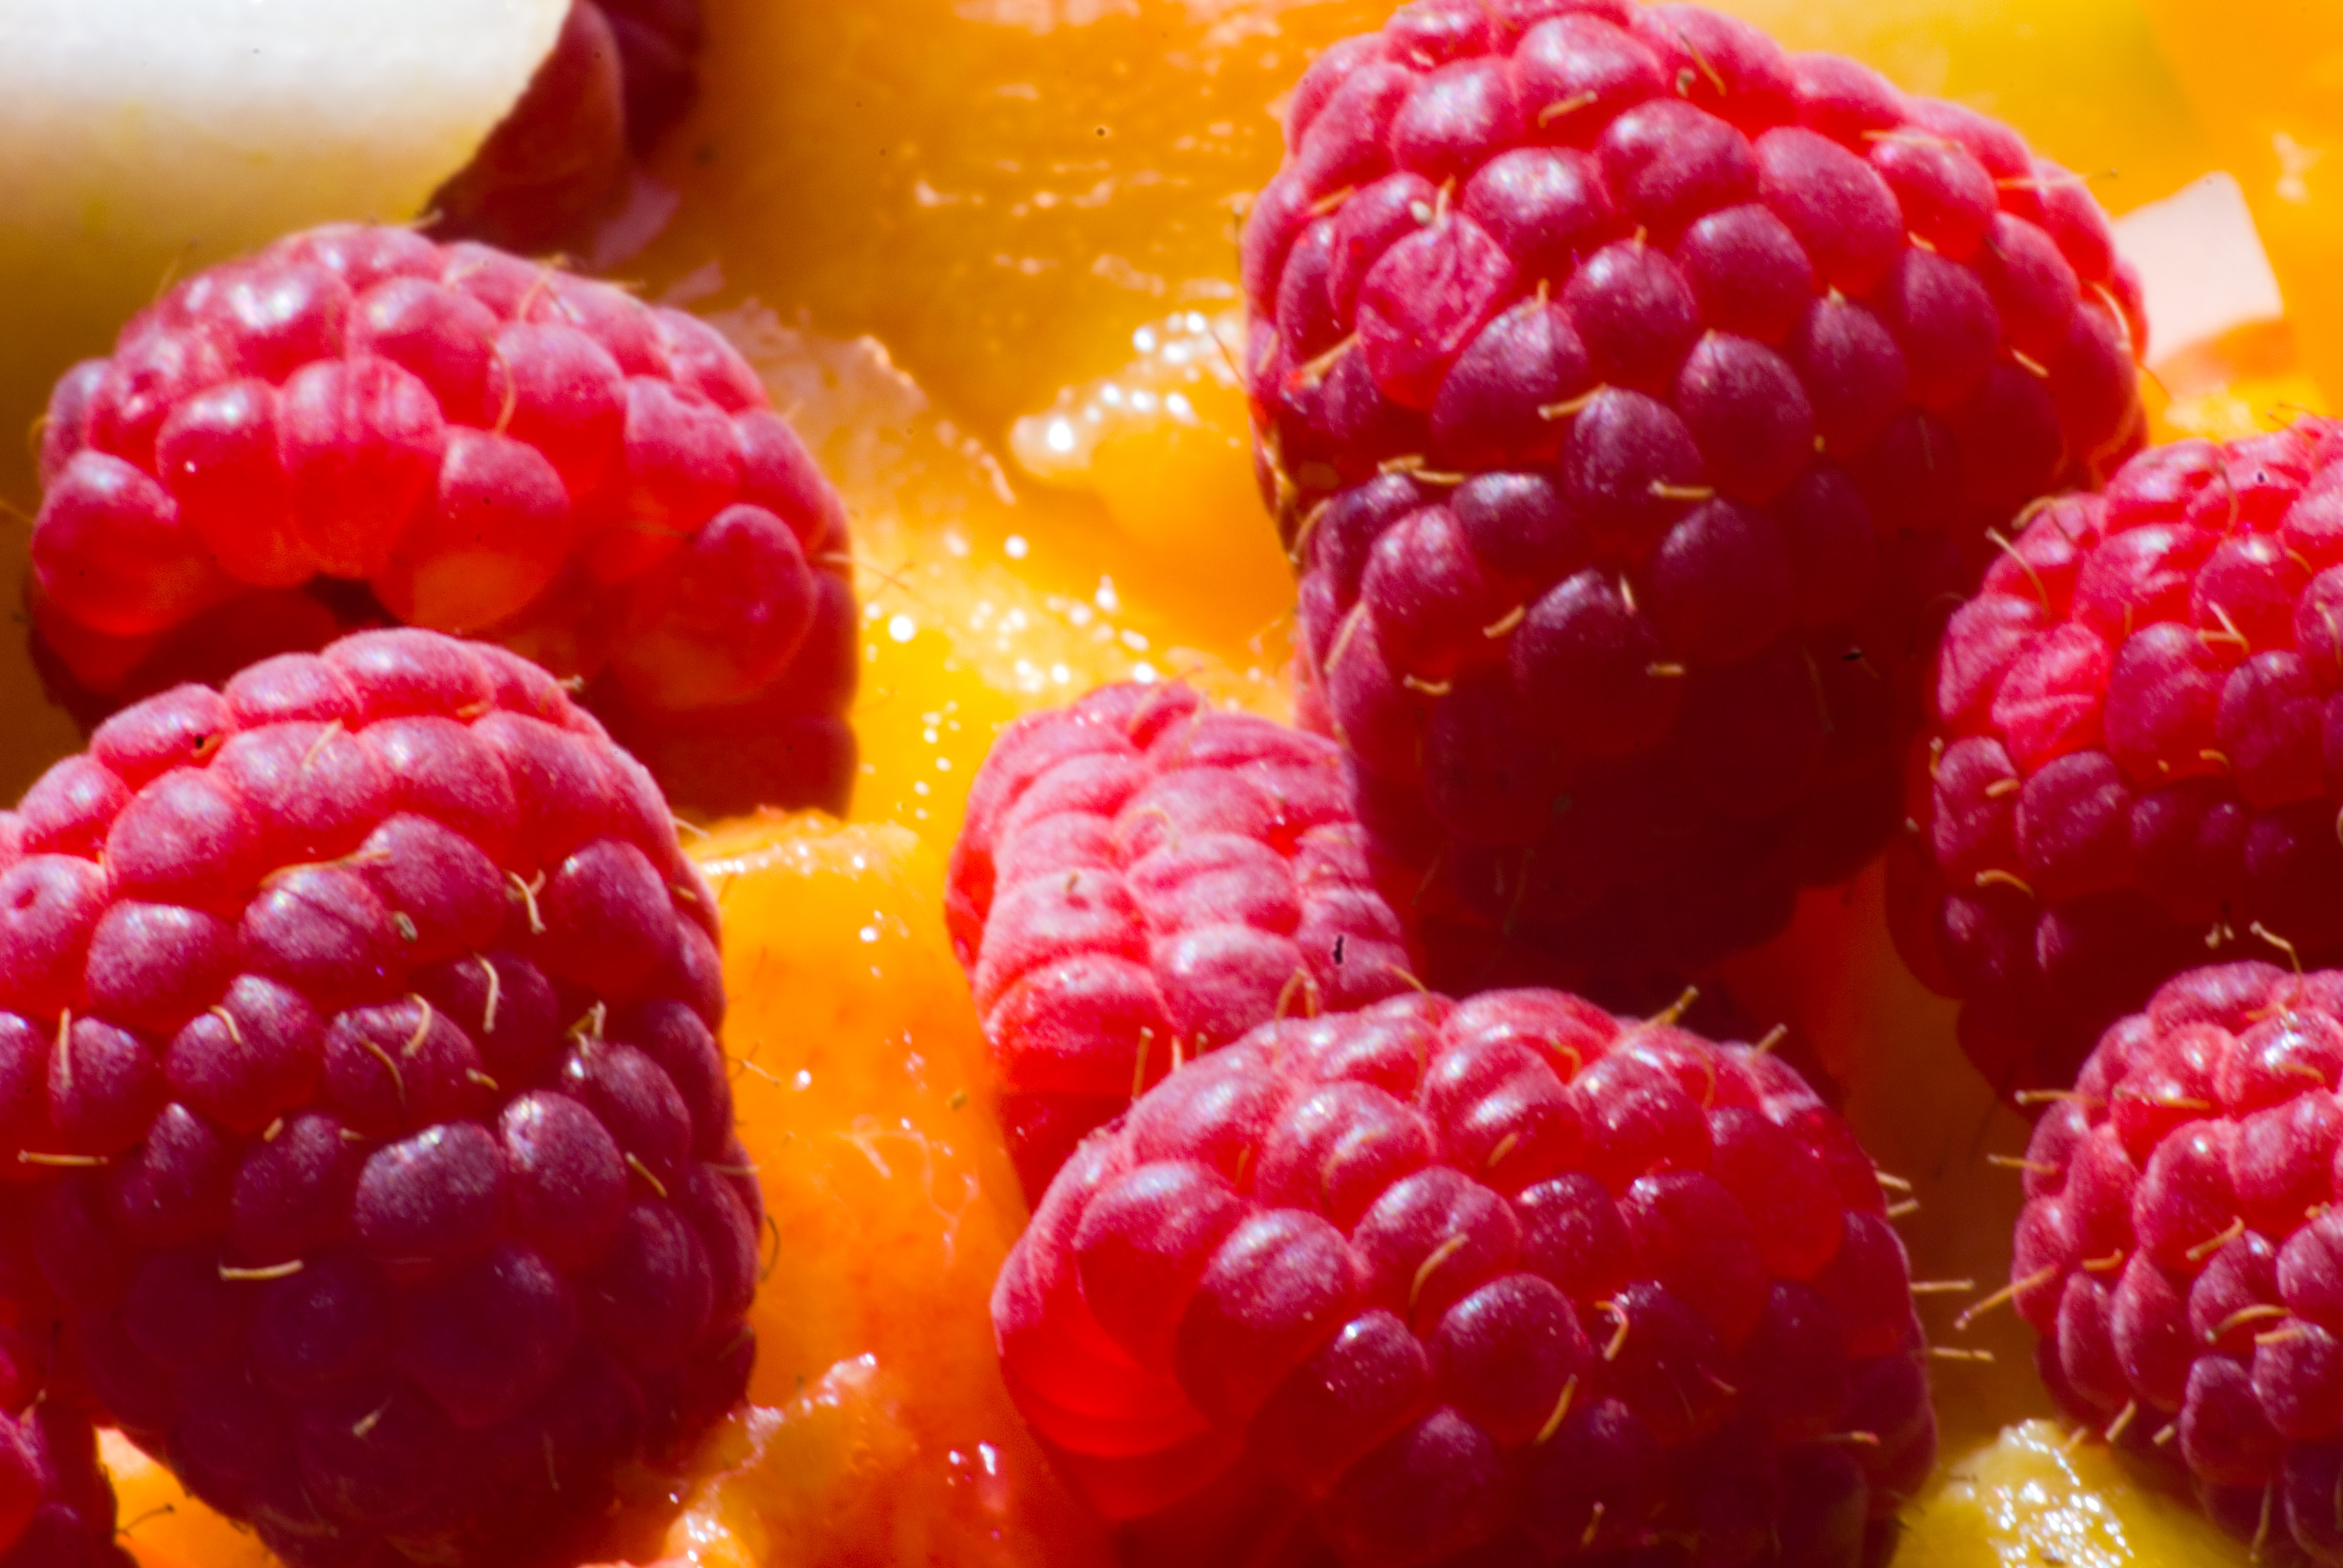 File:Mango and raspberry.jpg - Wikimedia Commons